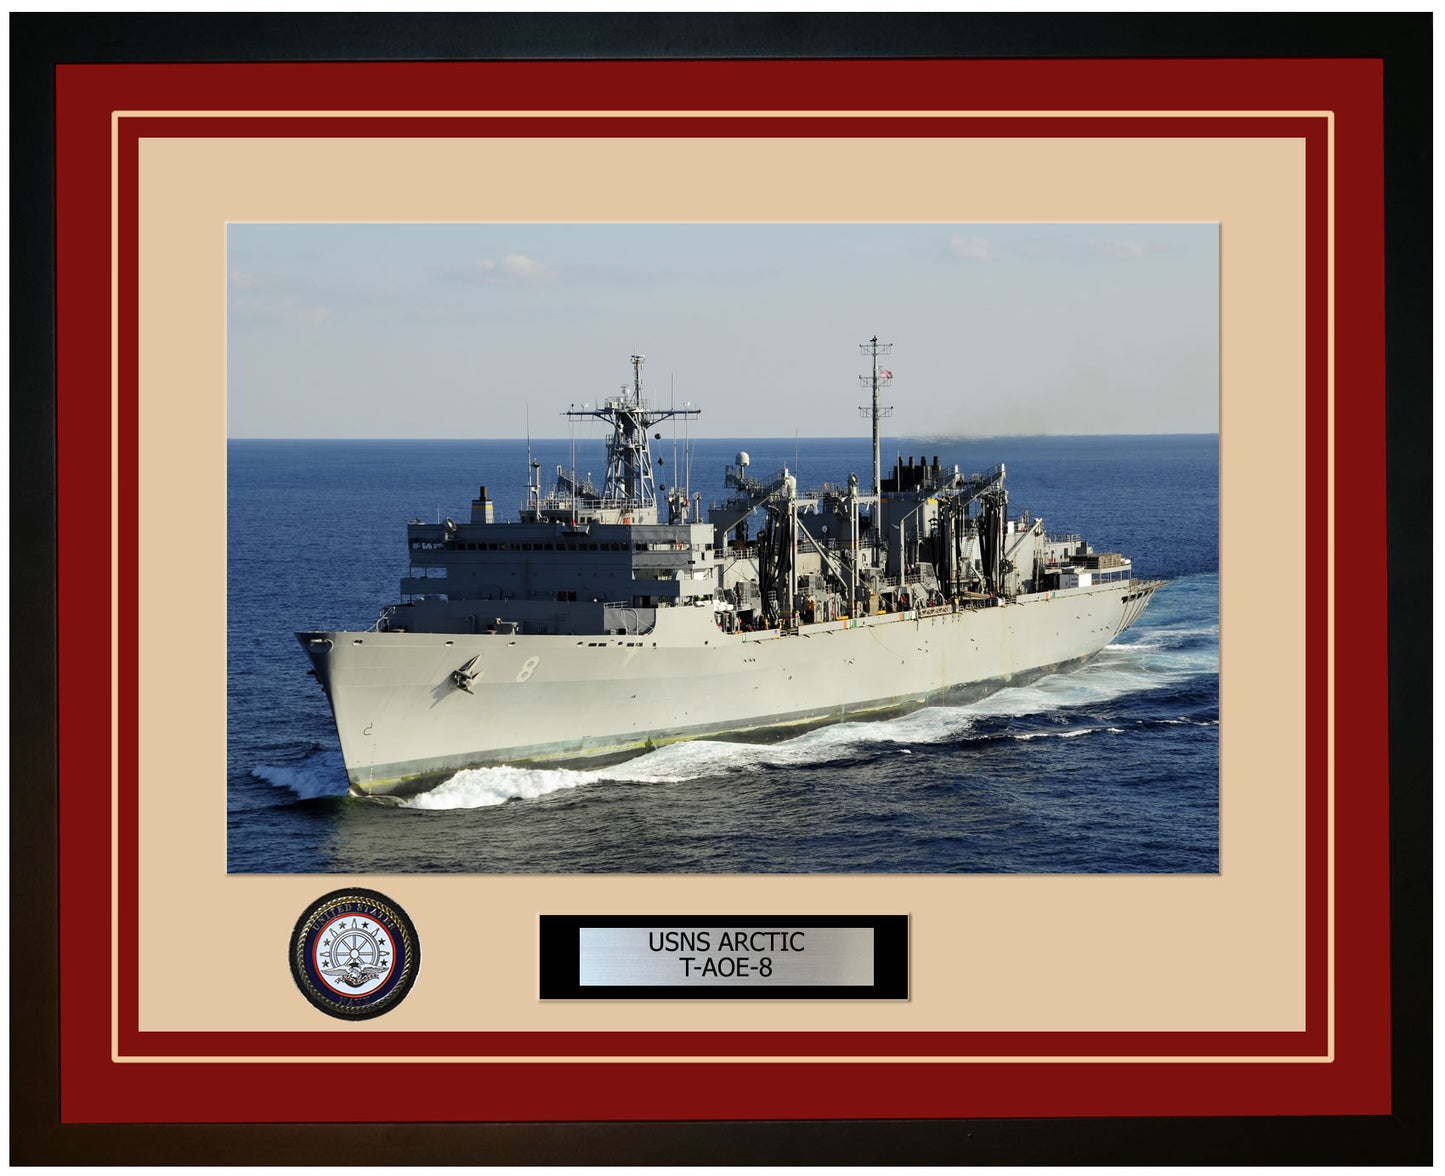 USS ARCTIC T-AOE-8 Framed Navy Ship Photo Burgundy